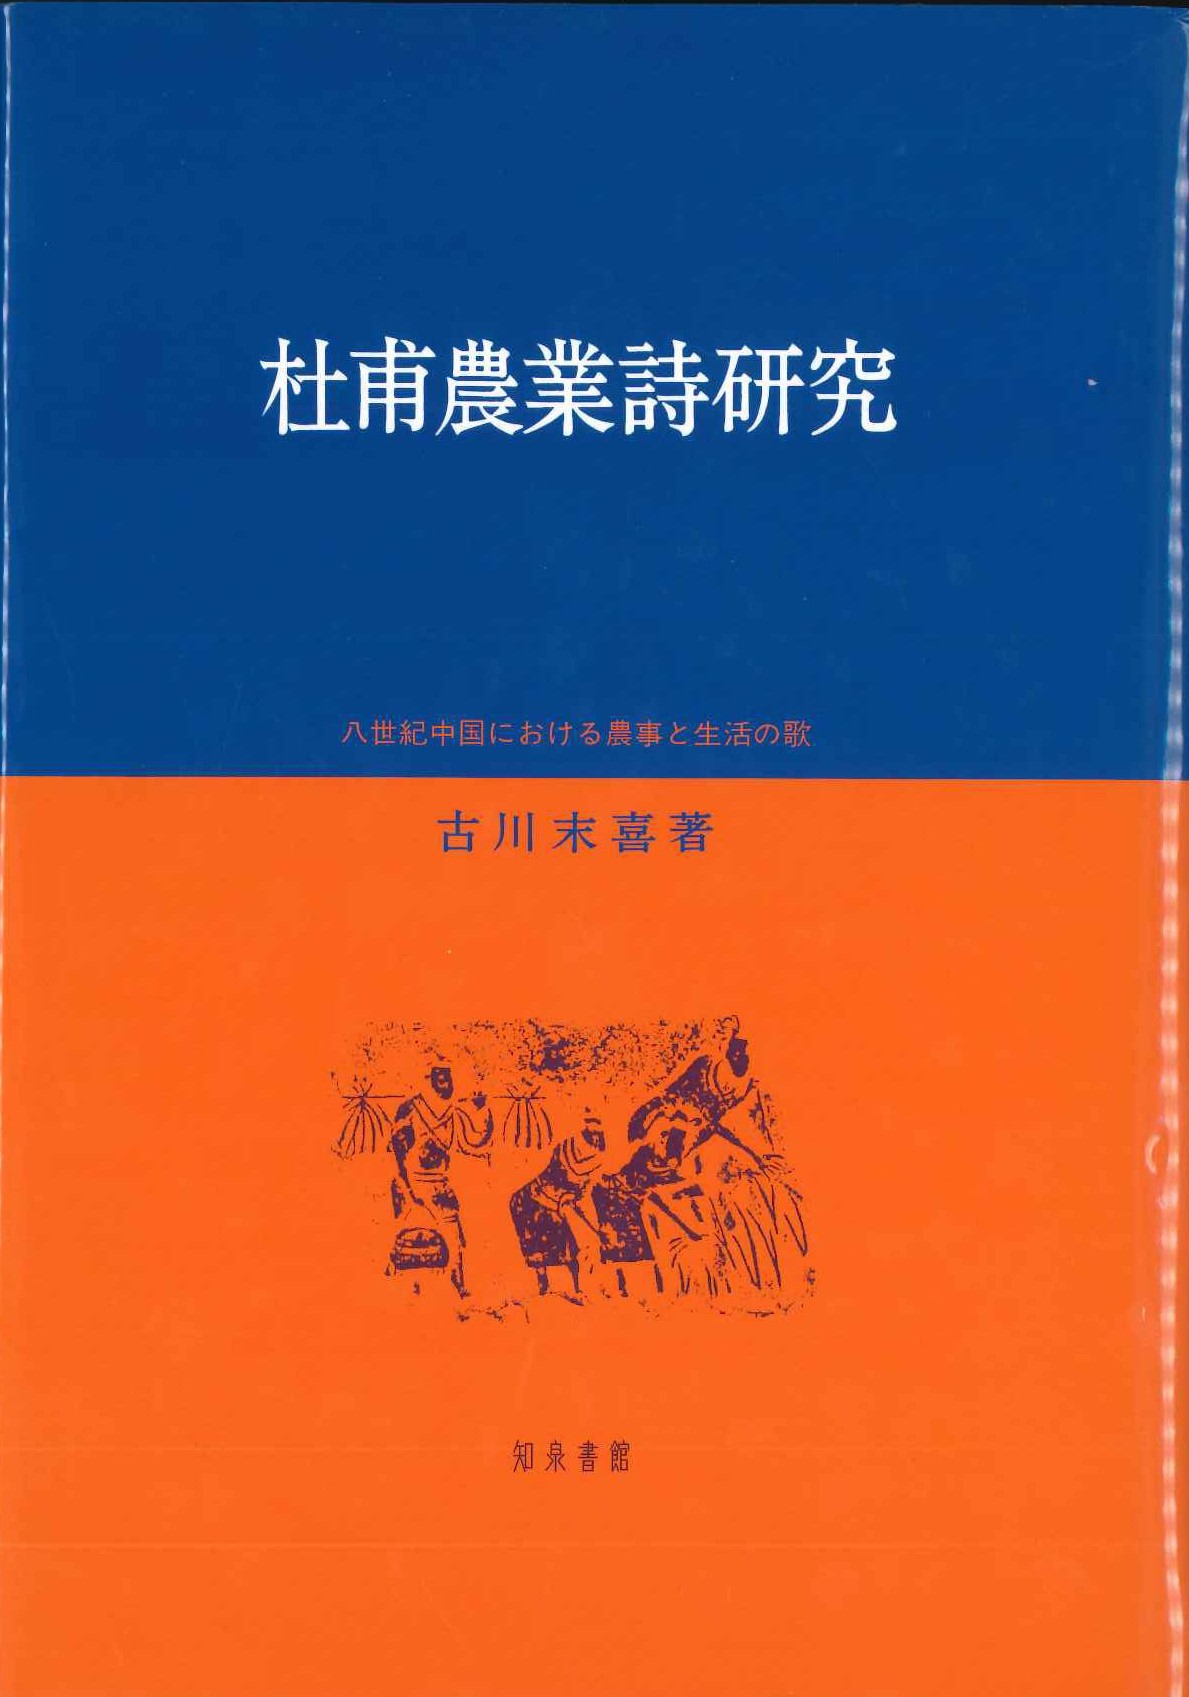 杜甫農業詩研究 八世紀中国における農事と生活の歌